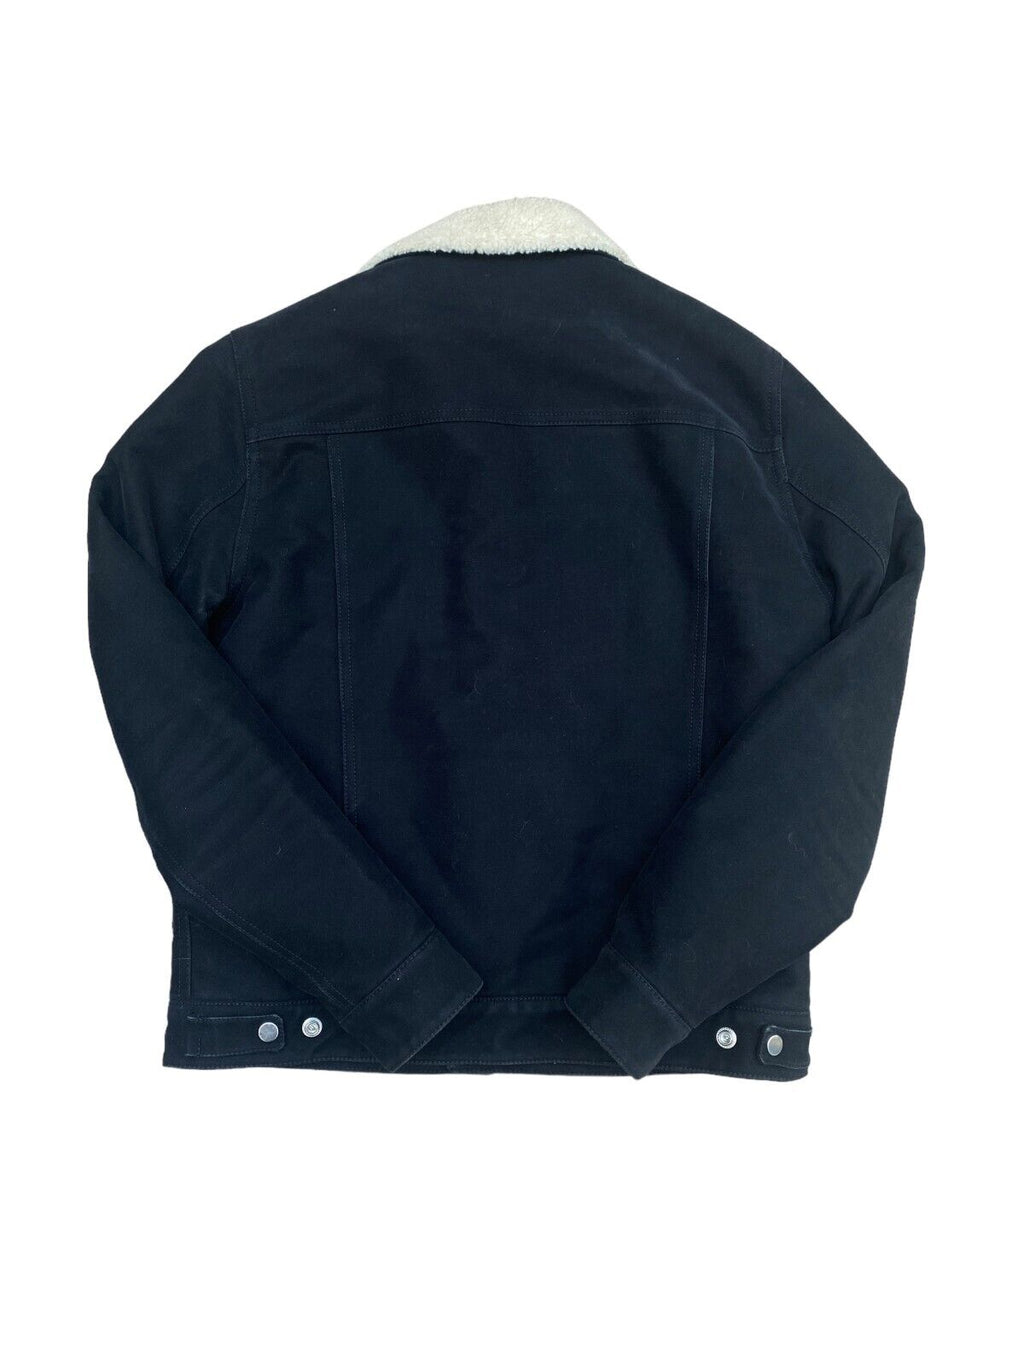 Black Shearling Jacket 